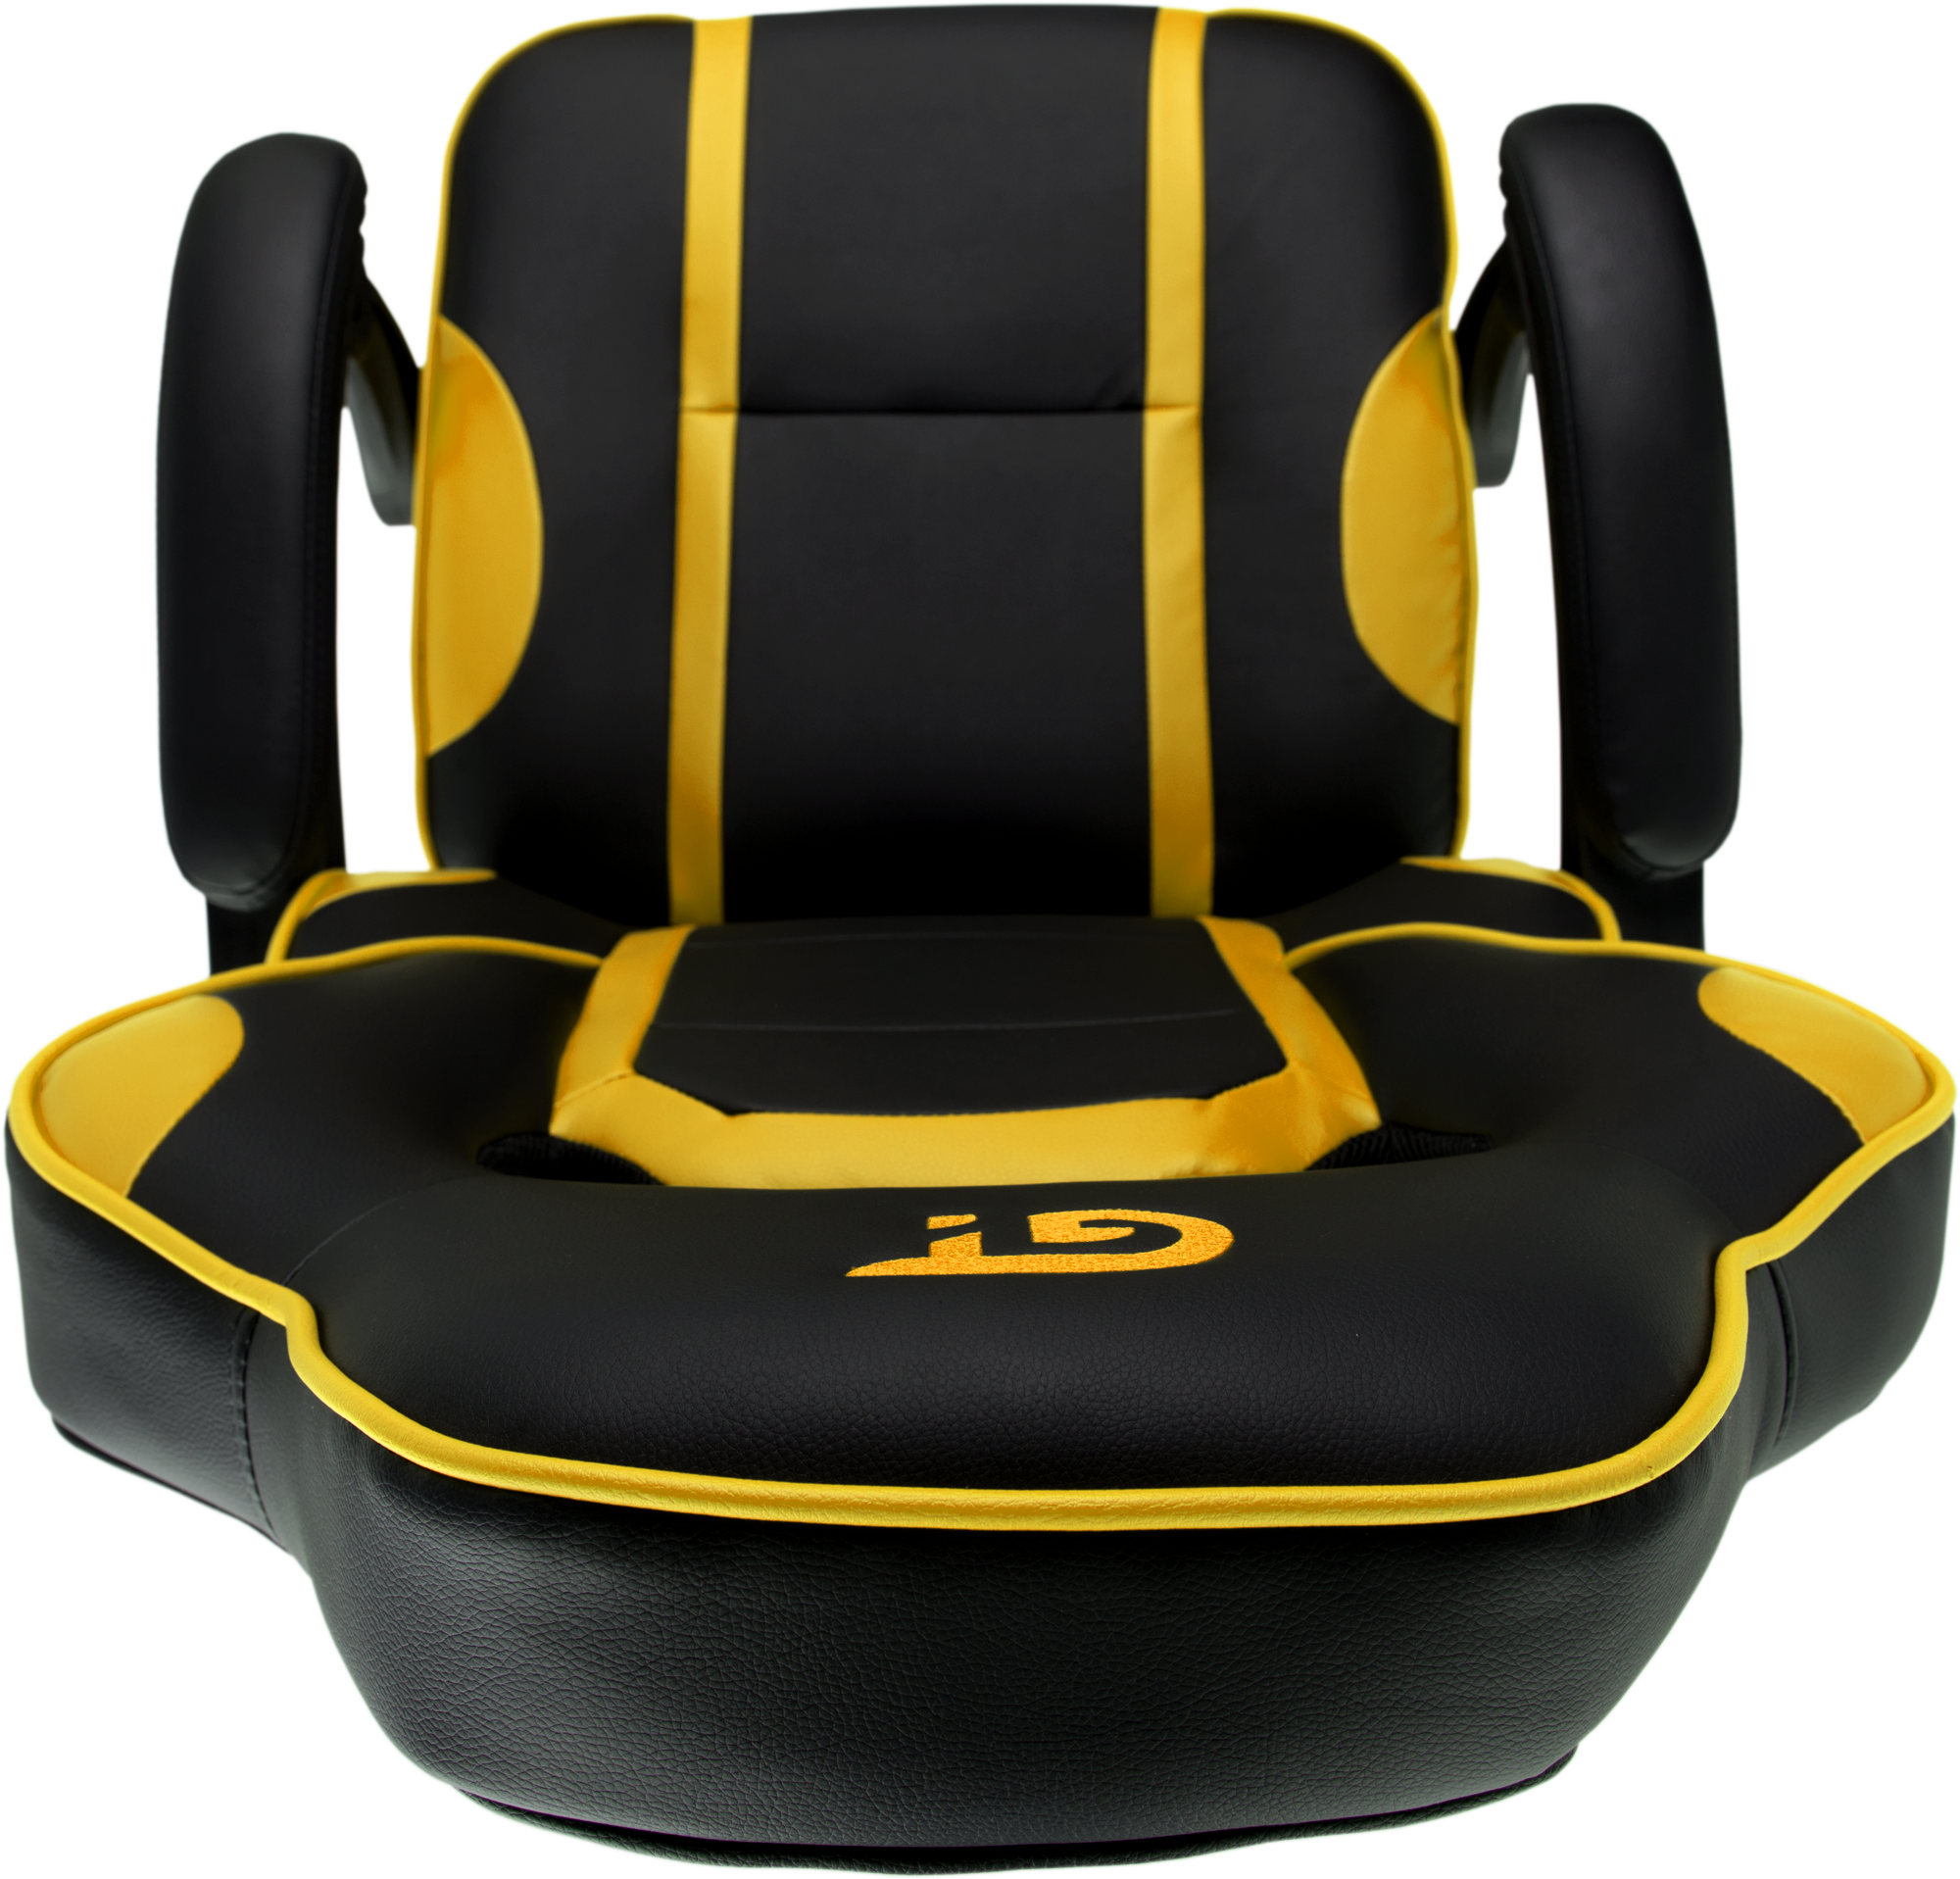 Геймерское кресло GT Racer черное с желтым (X-2749-1 Black/Yellow) - фото 10